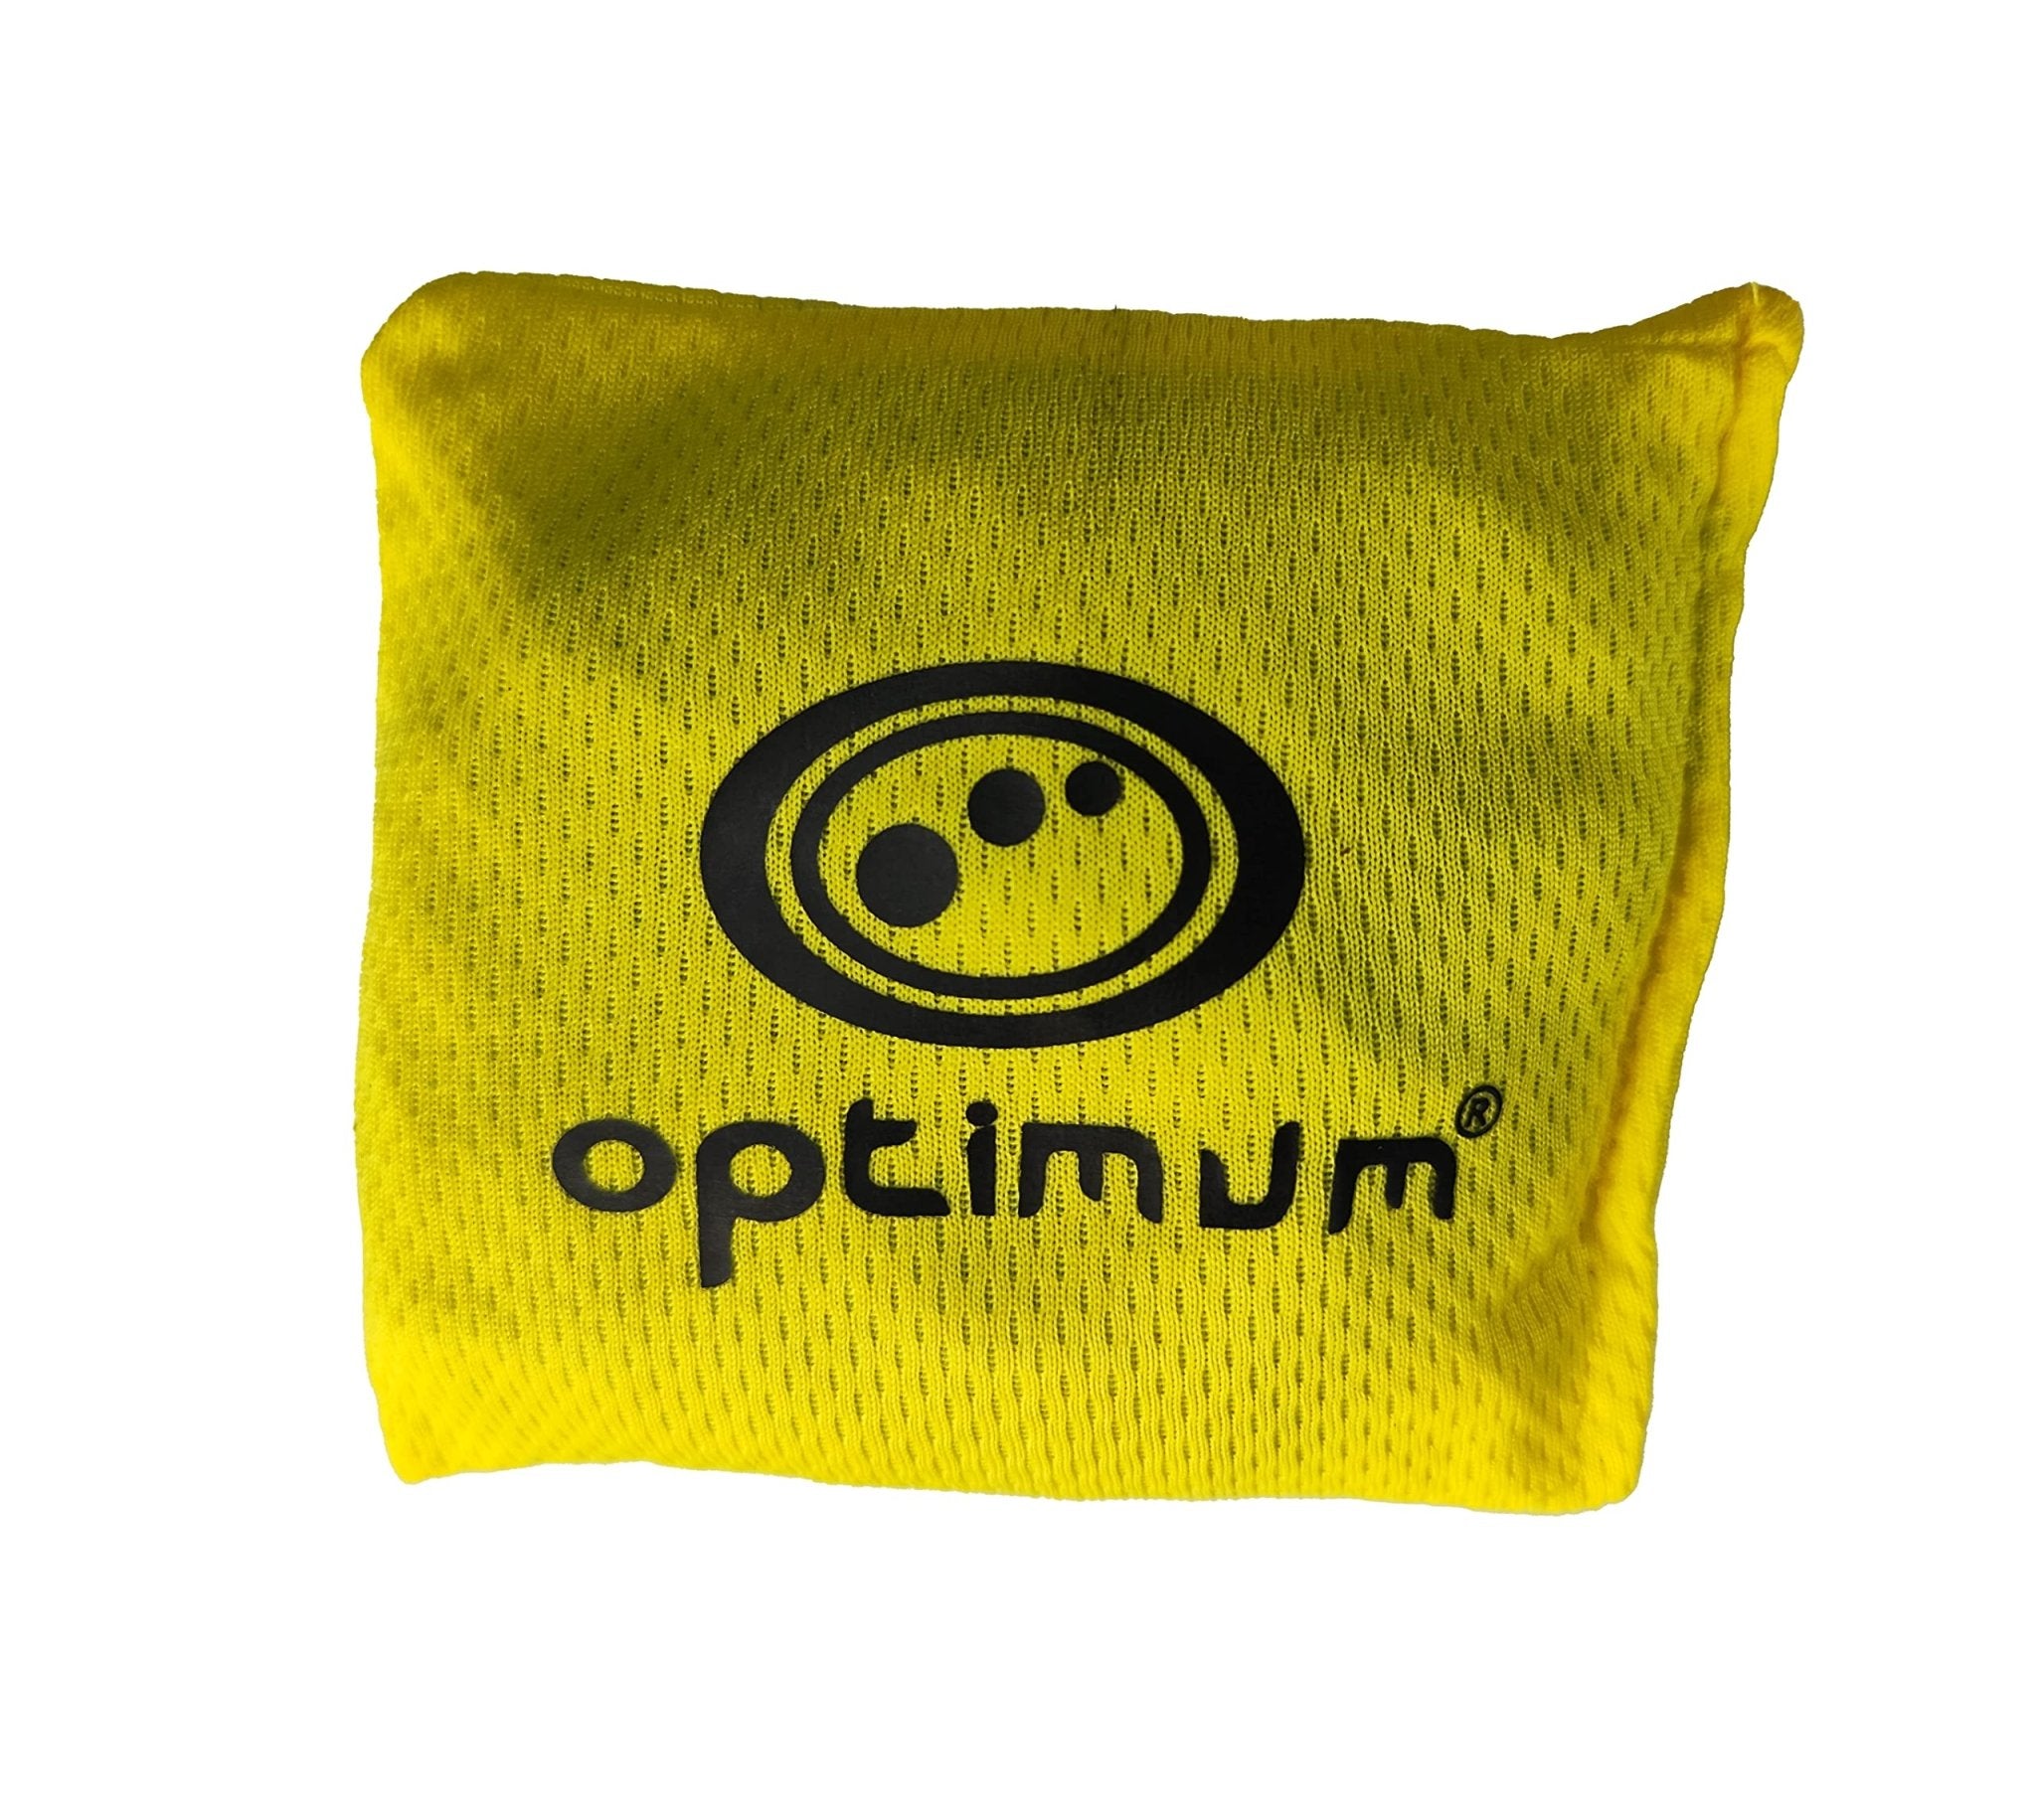 Optimum Bean Bags - 12 Pack - Optimum